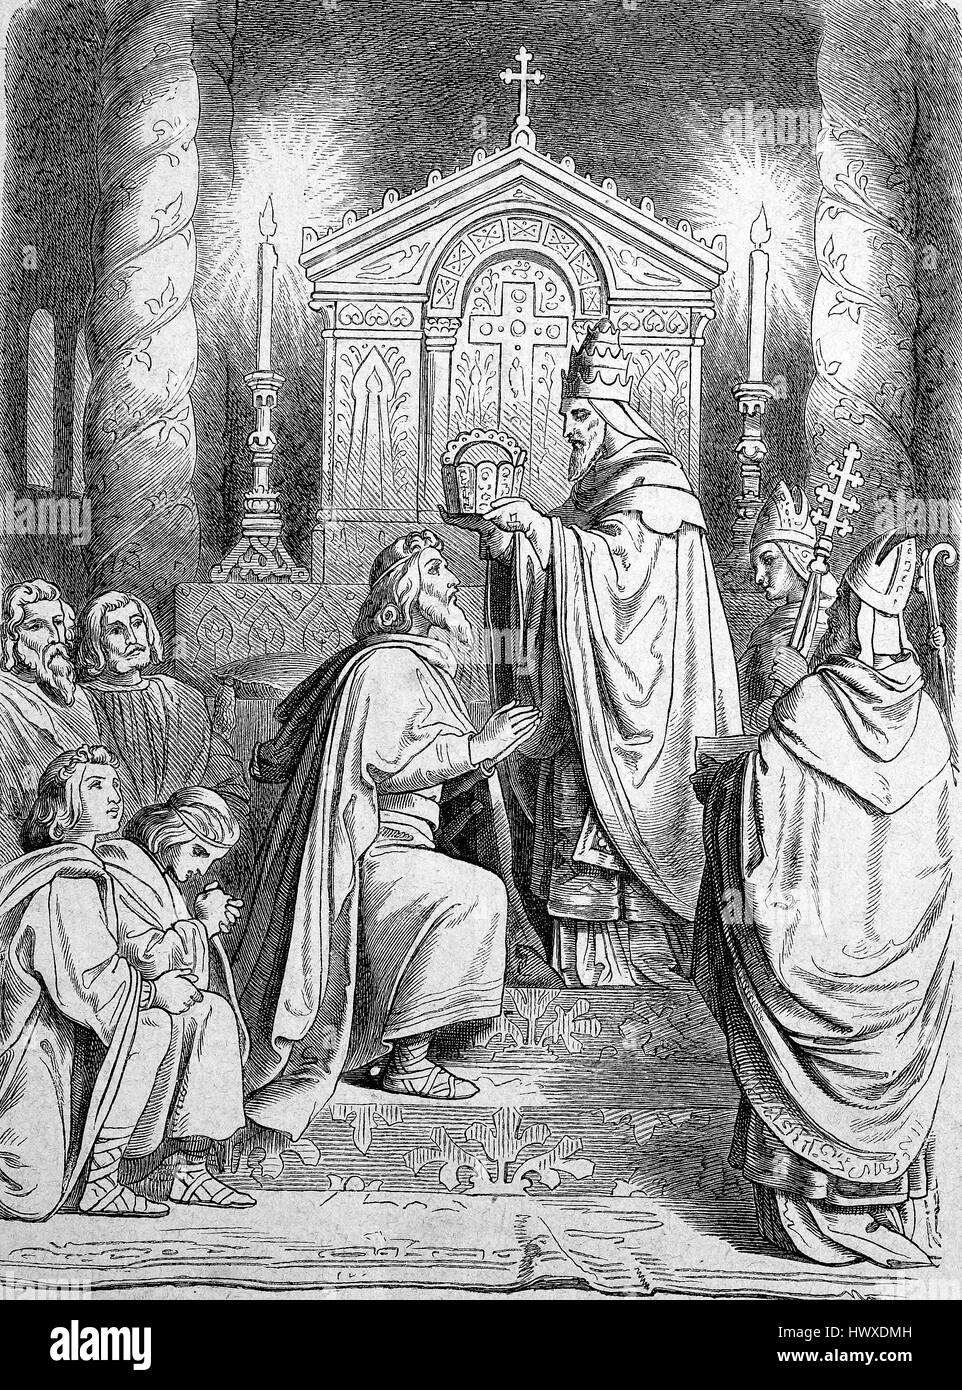 Charlemagne ou Charles le Grand, numérotées de Charles I, reçoit le premier jour de Noël en 800 par le Pape Léon III la couronne impériale, l'Allemagne, la reproduction d'une image, gravure sur bois de l'année 1881, l'amélioration numérique Banque D'Images